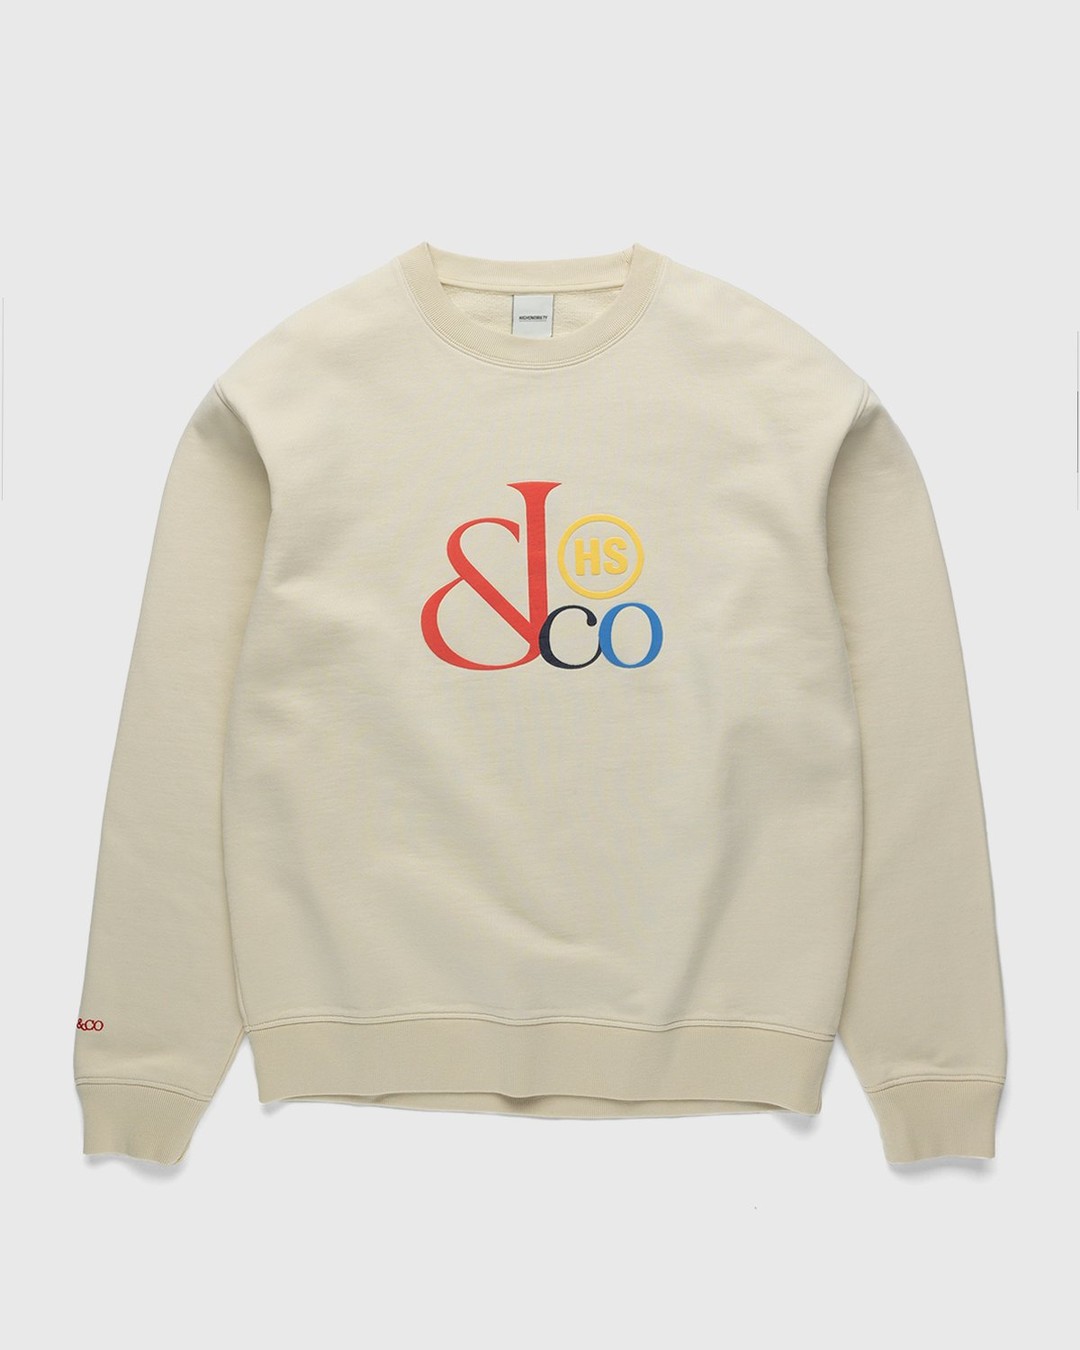 Jacob & Co. x Highsnobiety – Logo Fleece Crew Beige - Sweatshirts - Beige - Image 1